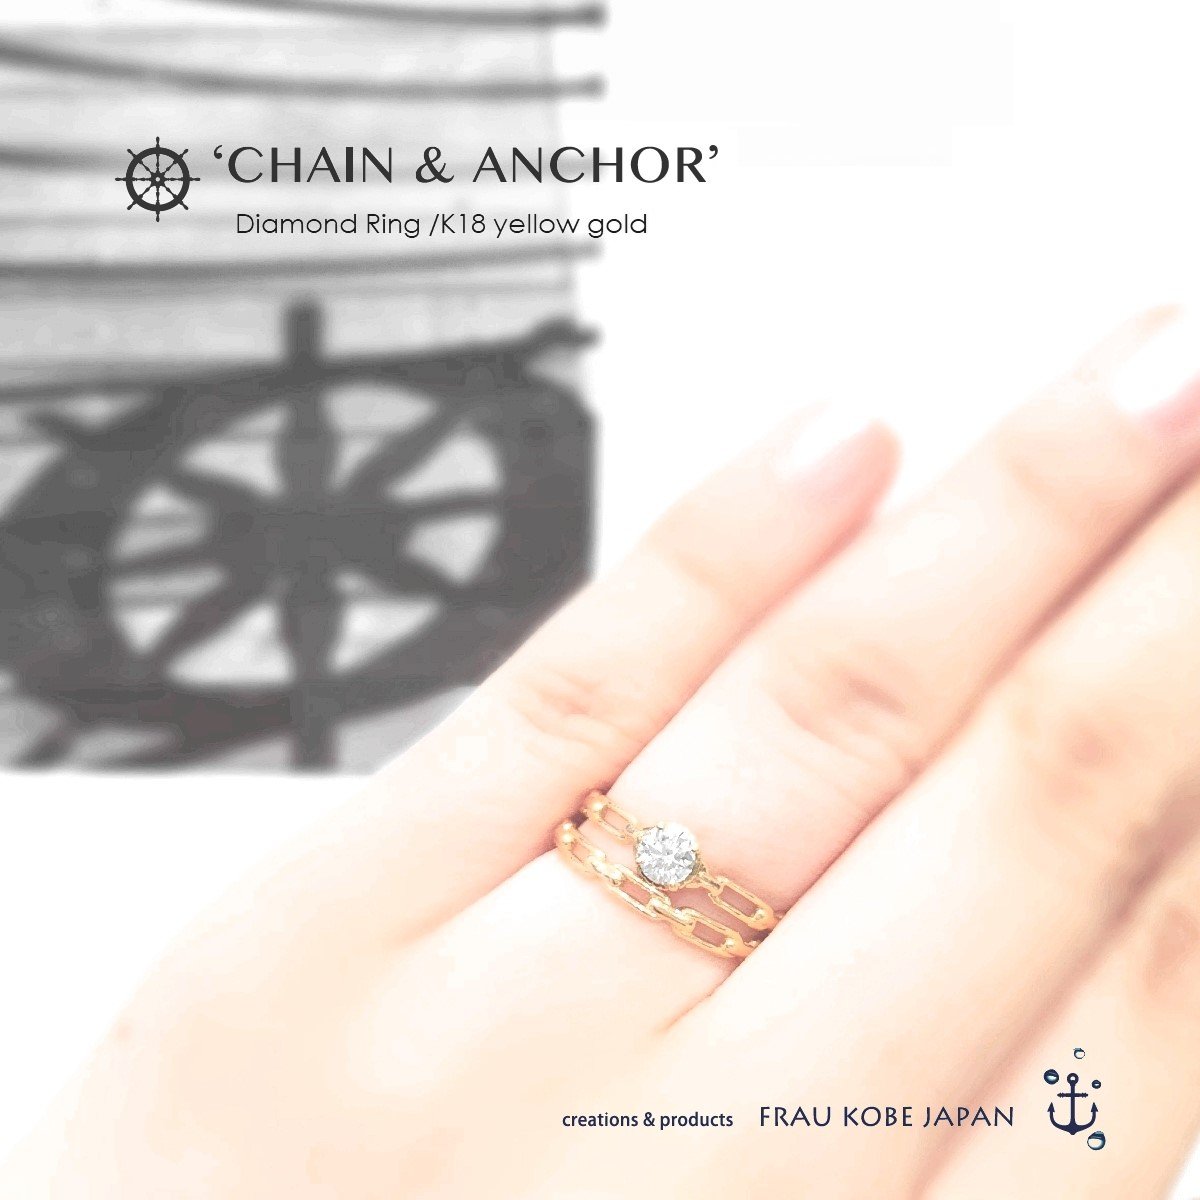 【神戸港開港150周年記念】Chain&Anchor/チェーンアンドアンカーダイアモンドリング - FRAU KOBE on-line shop  '神戸育ちのシンプルジュエリー’